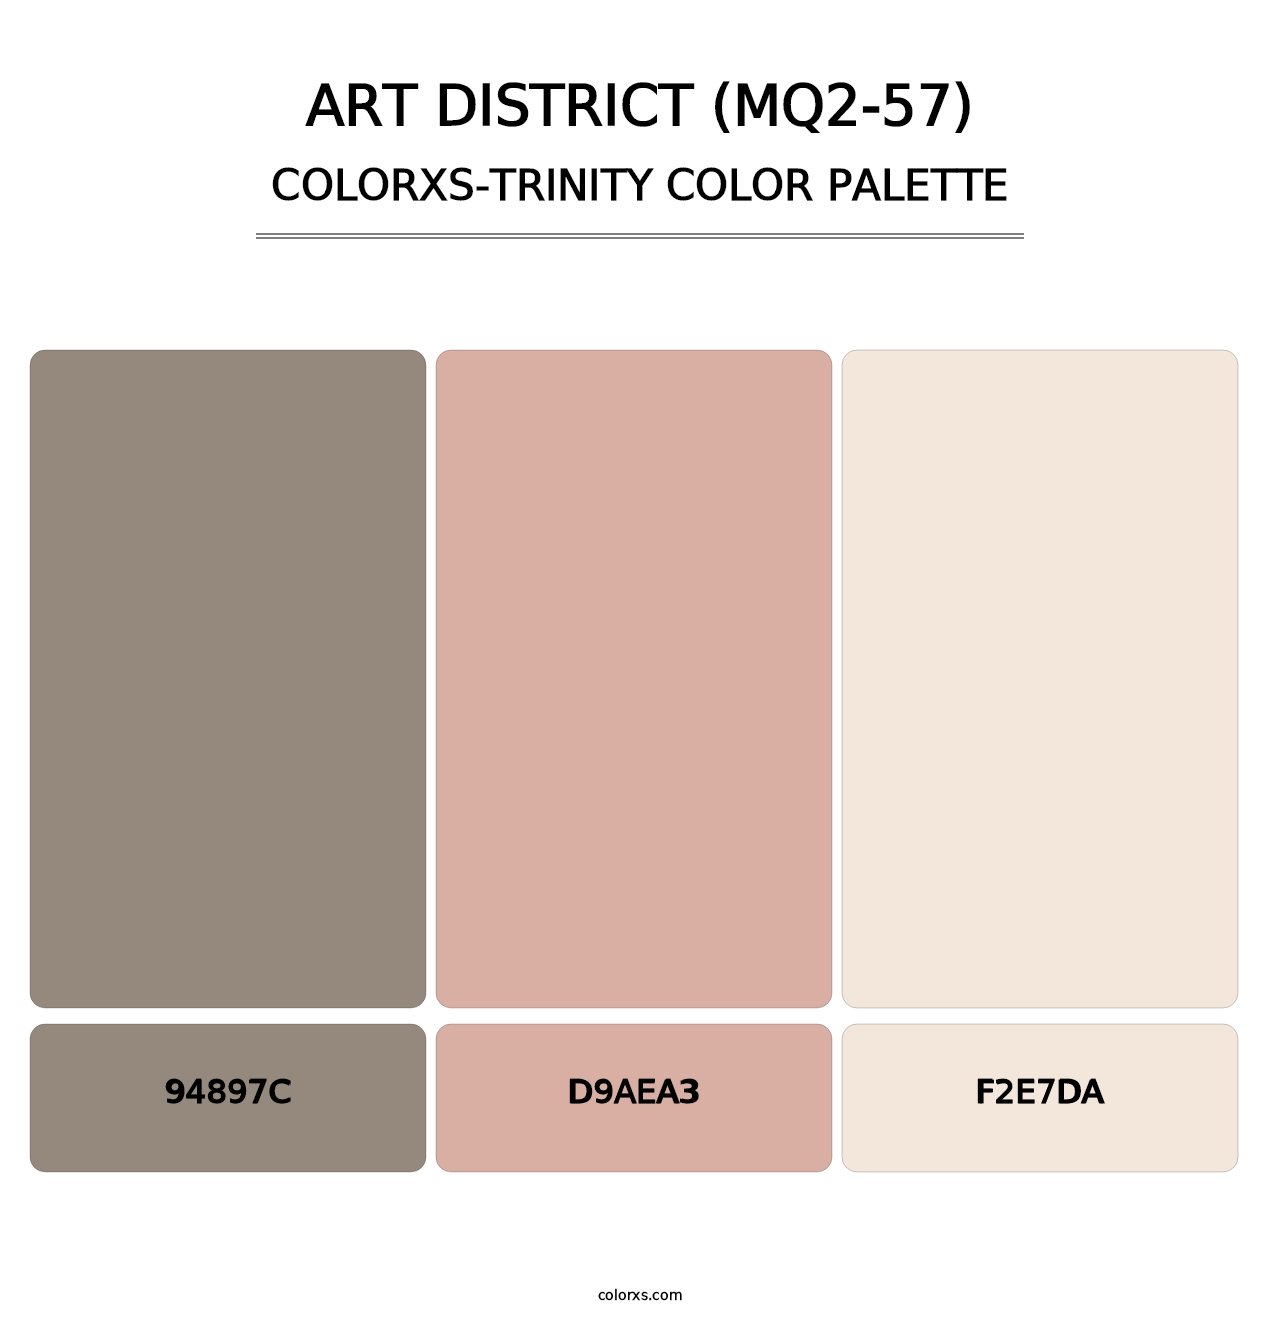 Art District (MQ2-57) - Colorxs Trinity Palette